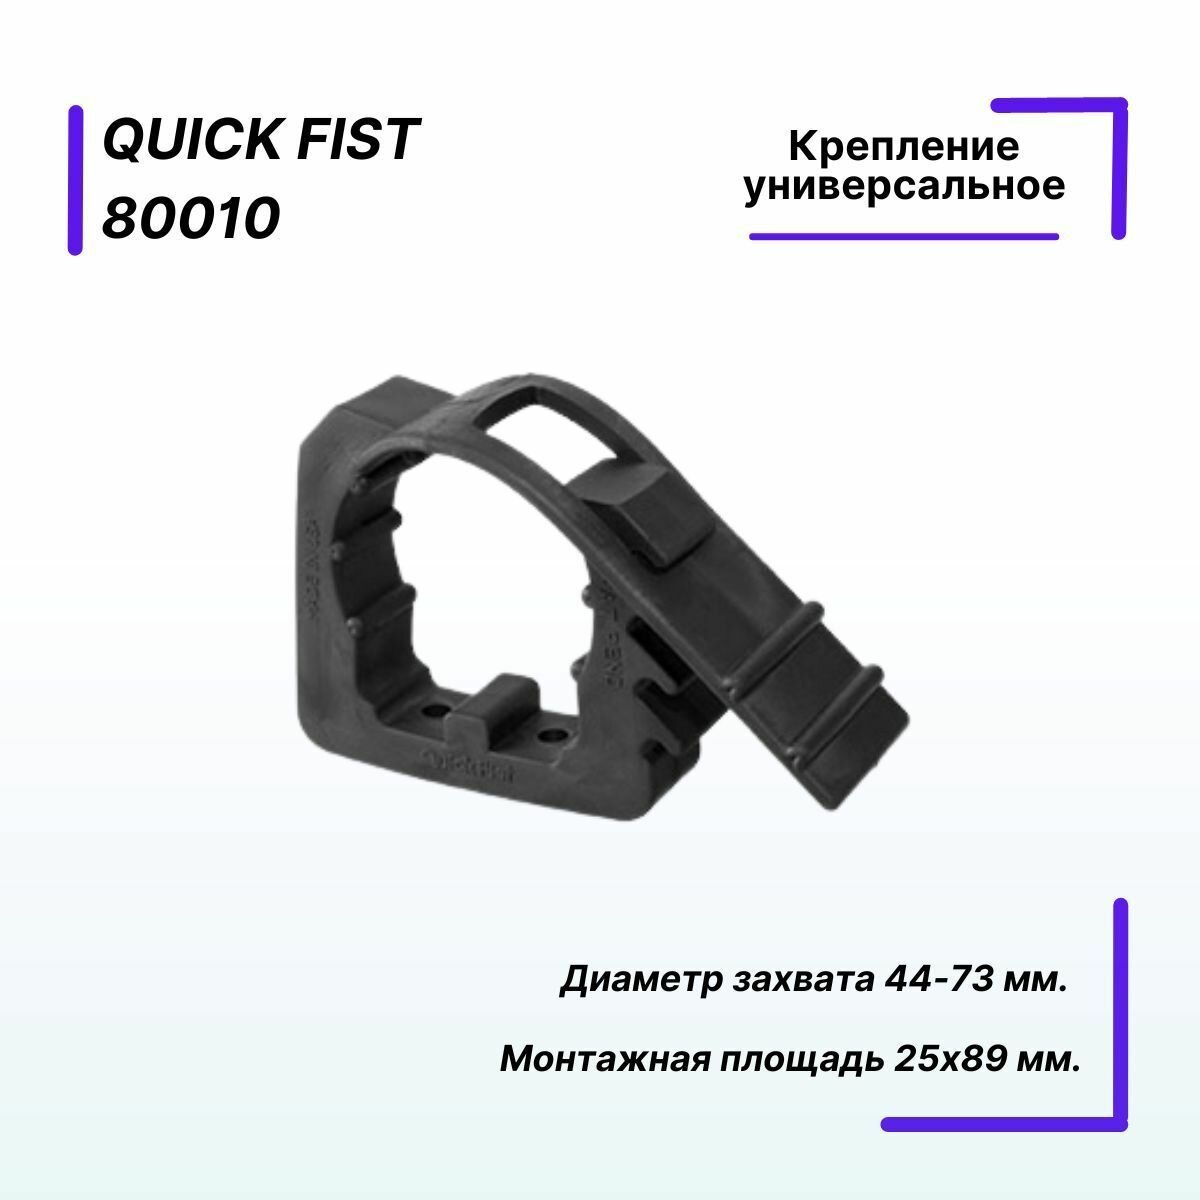 Крепление универсальное Quick Fist для предметов диаметром от 44 до 73 мм